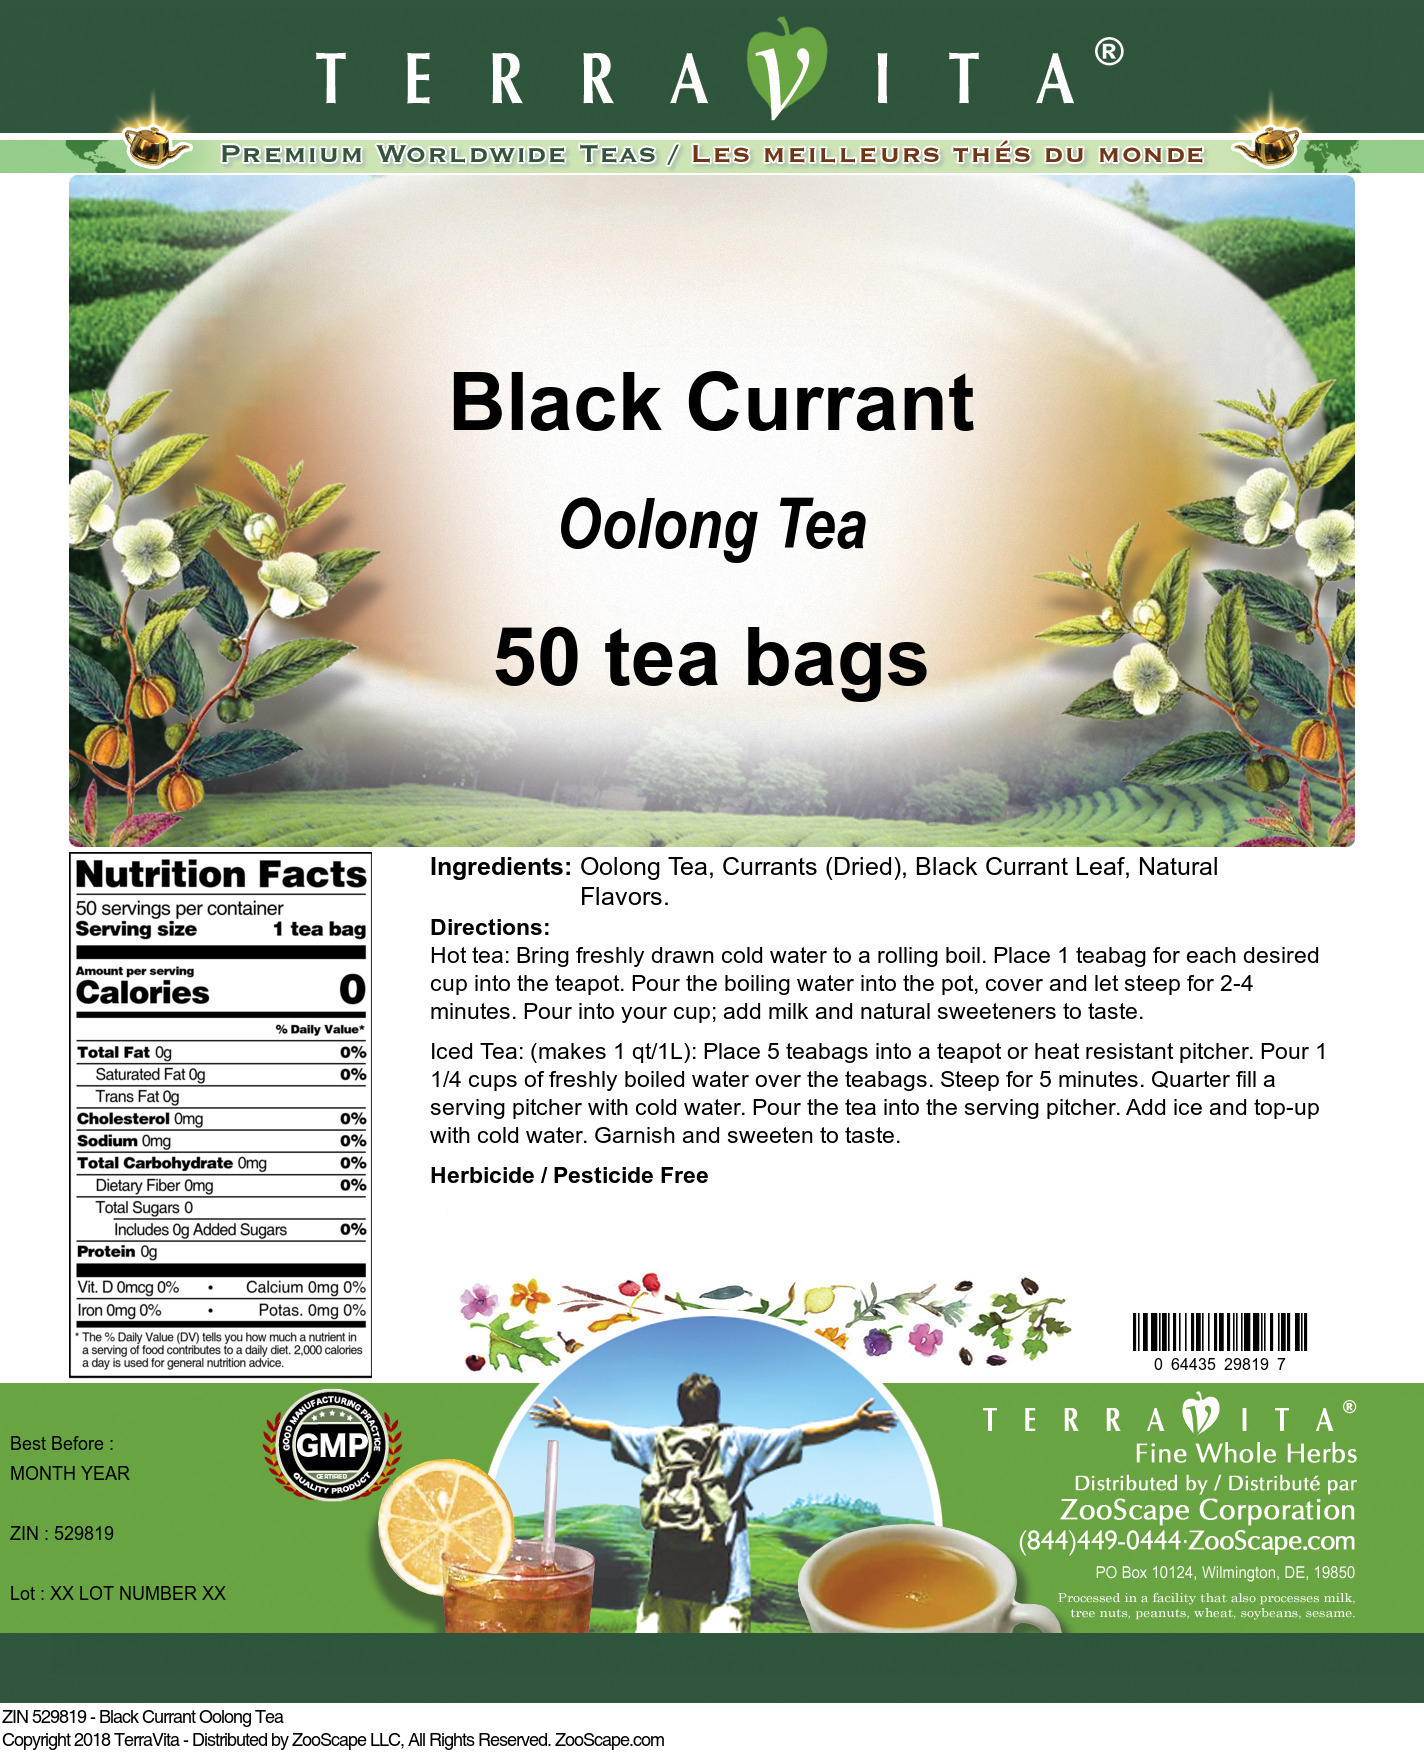 Black Currant Oolong Tea - Label